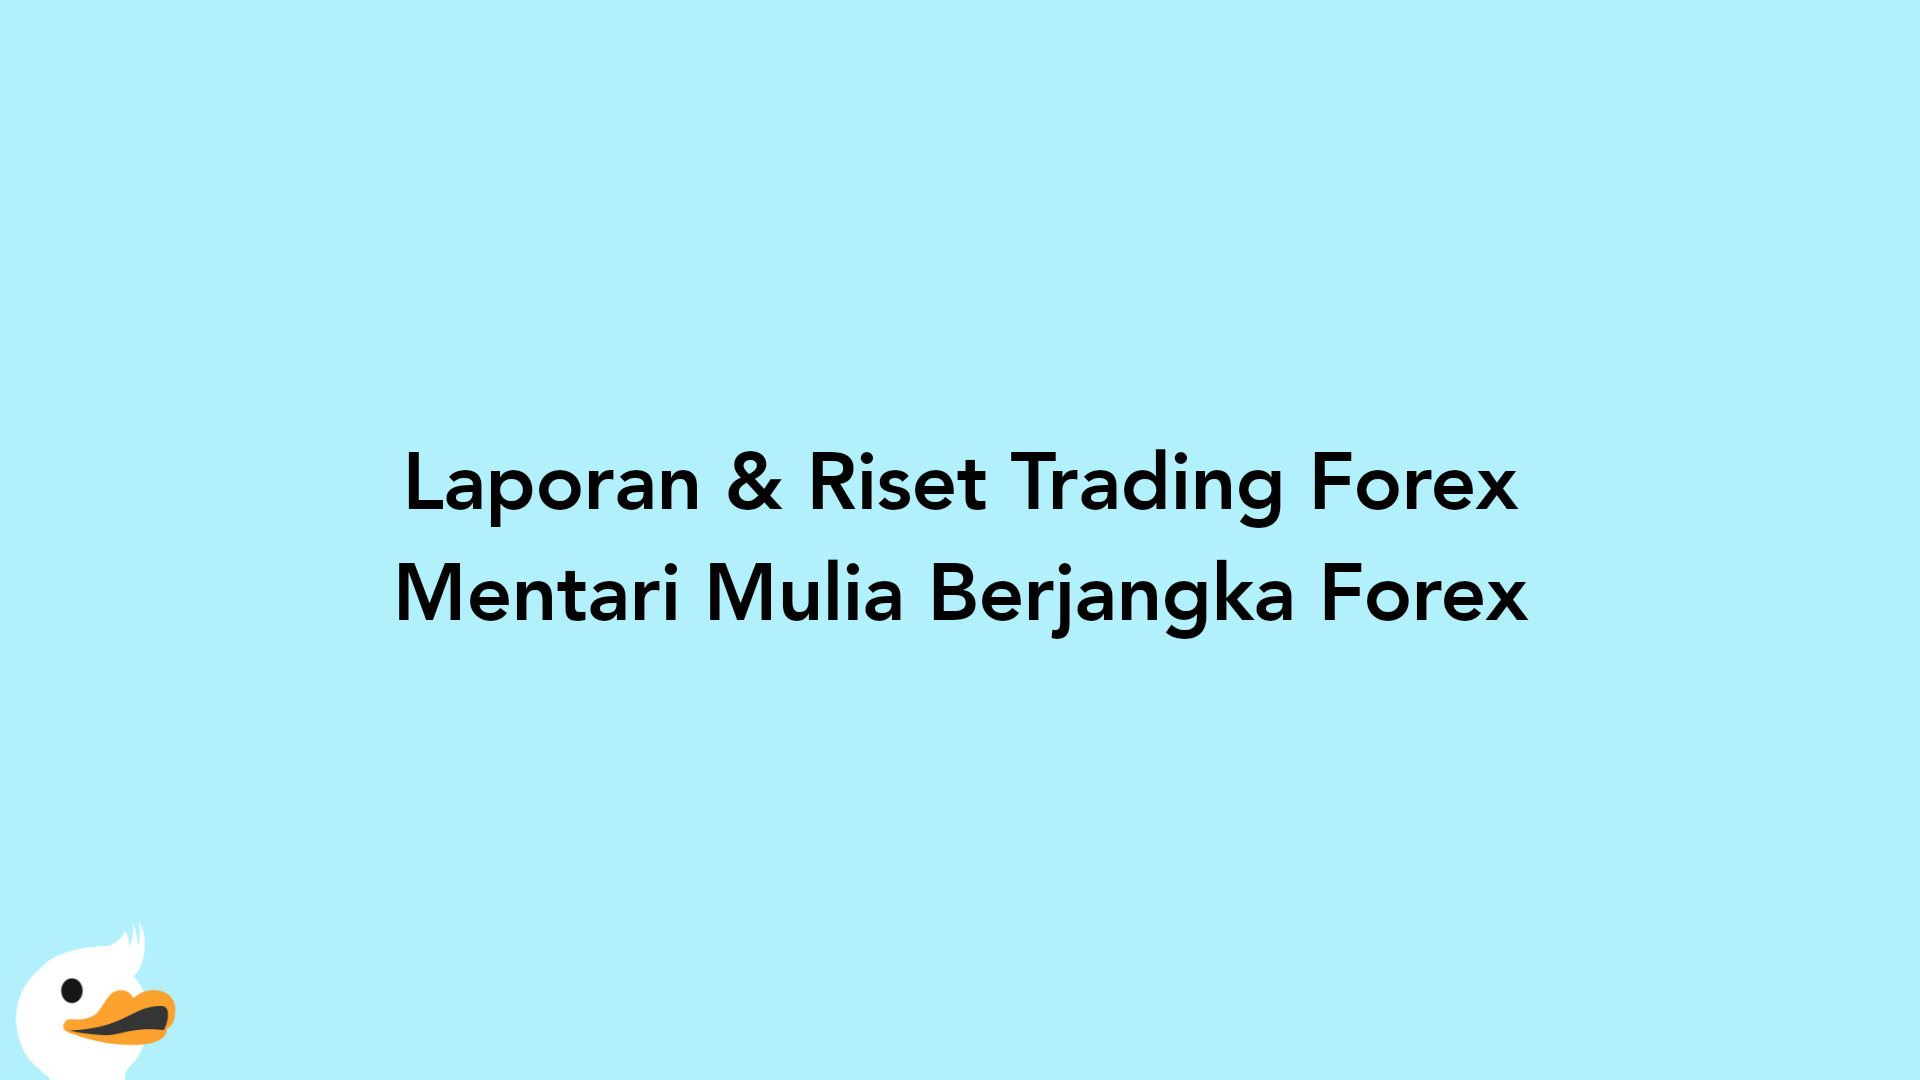 Laporan & Riset Trading Forex Mentari Mulia Berjangka Forex